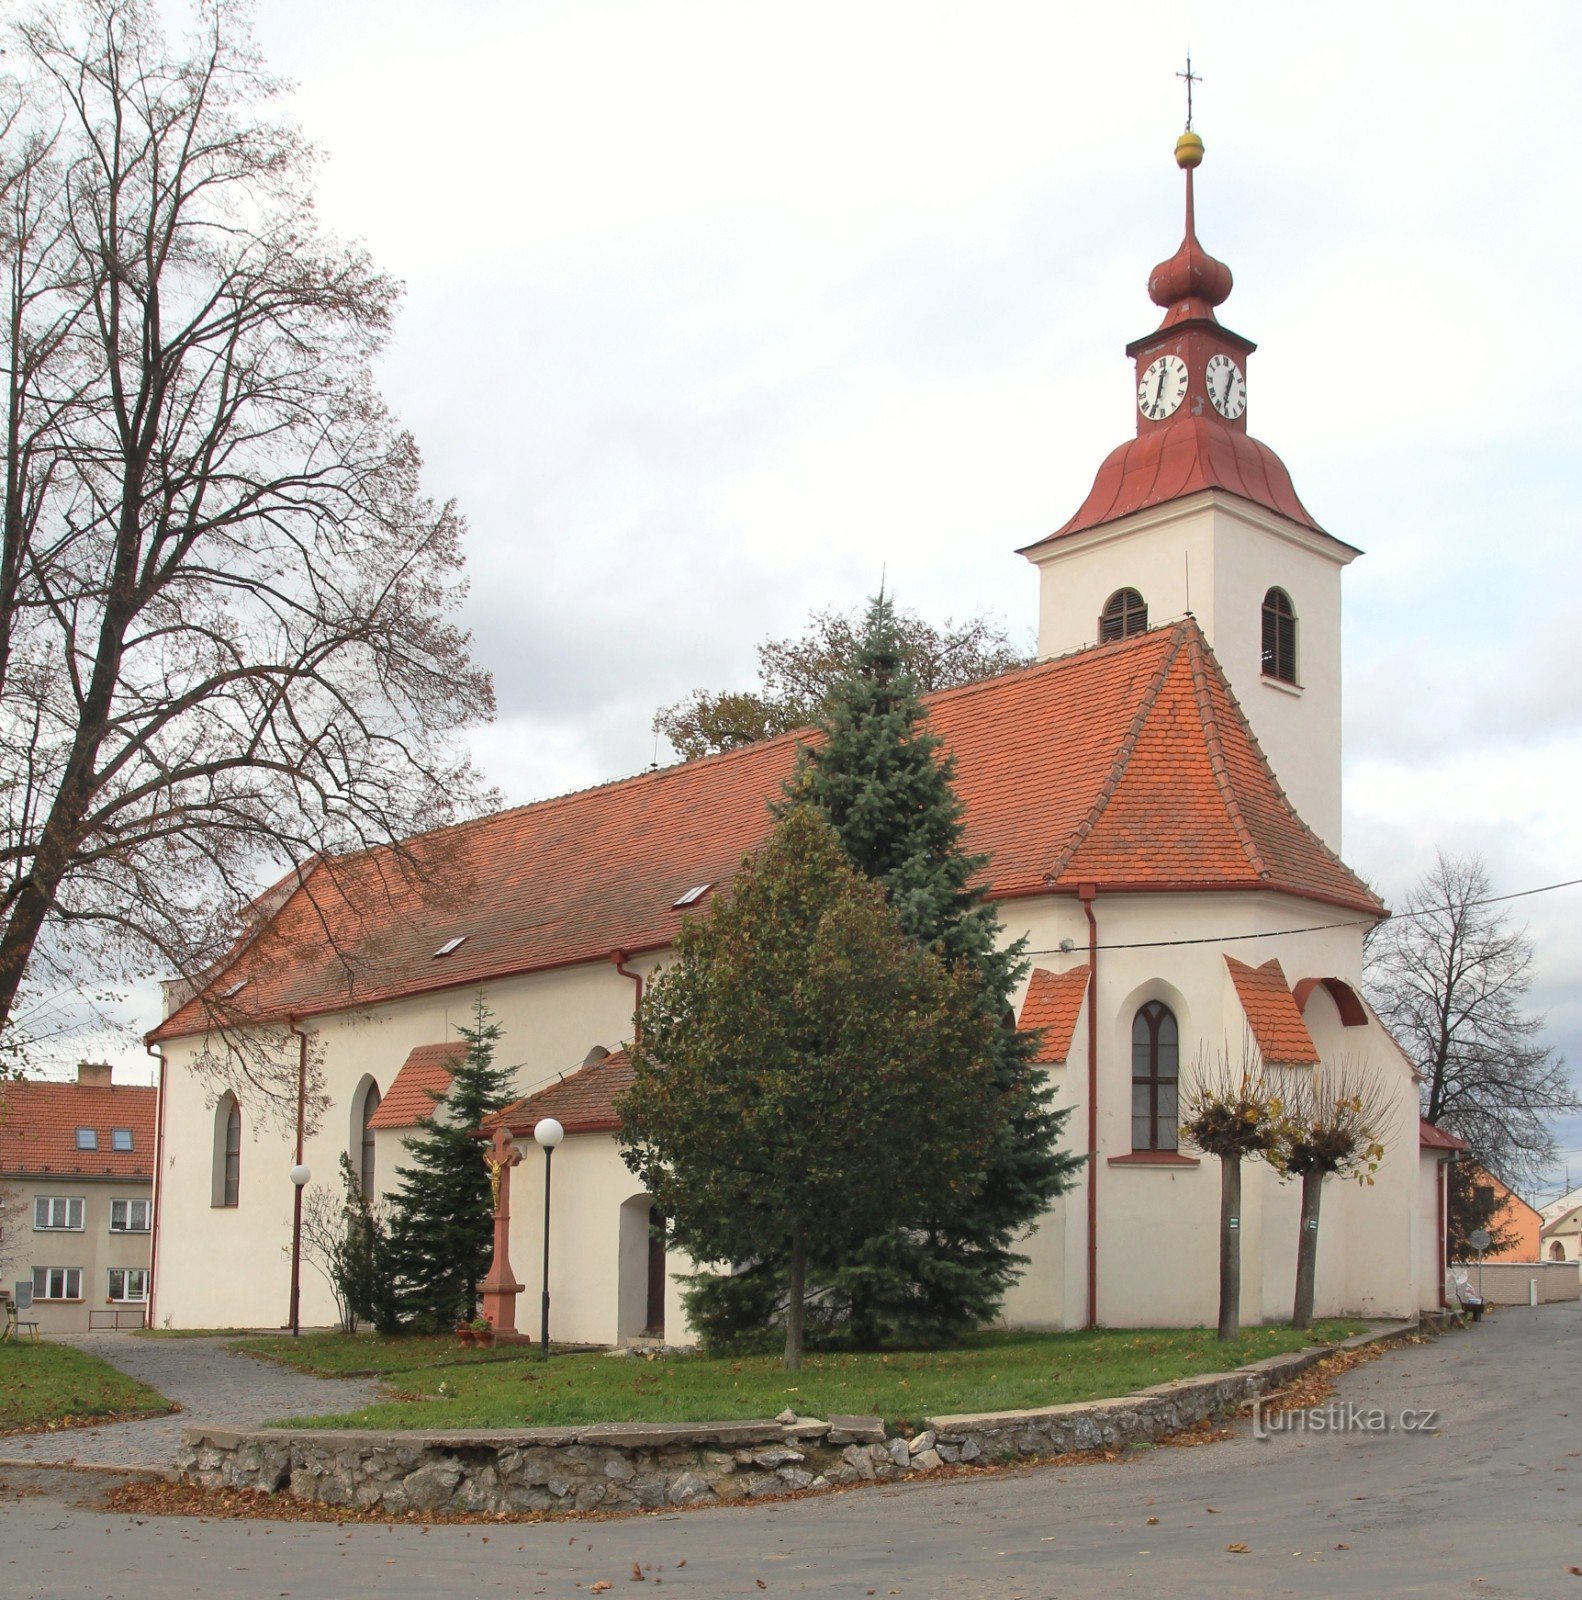 Church of St. Jiří in Čebín